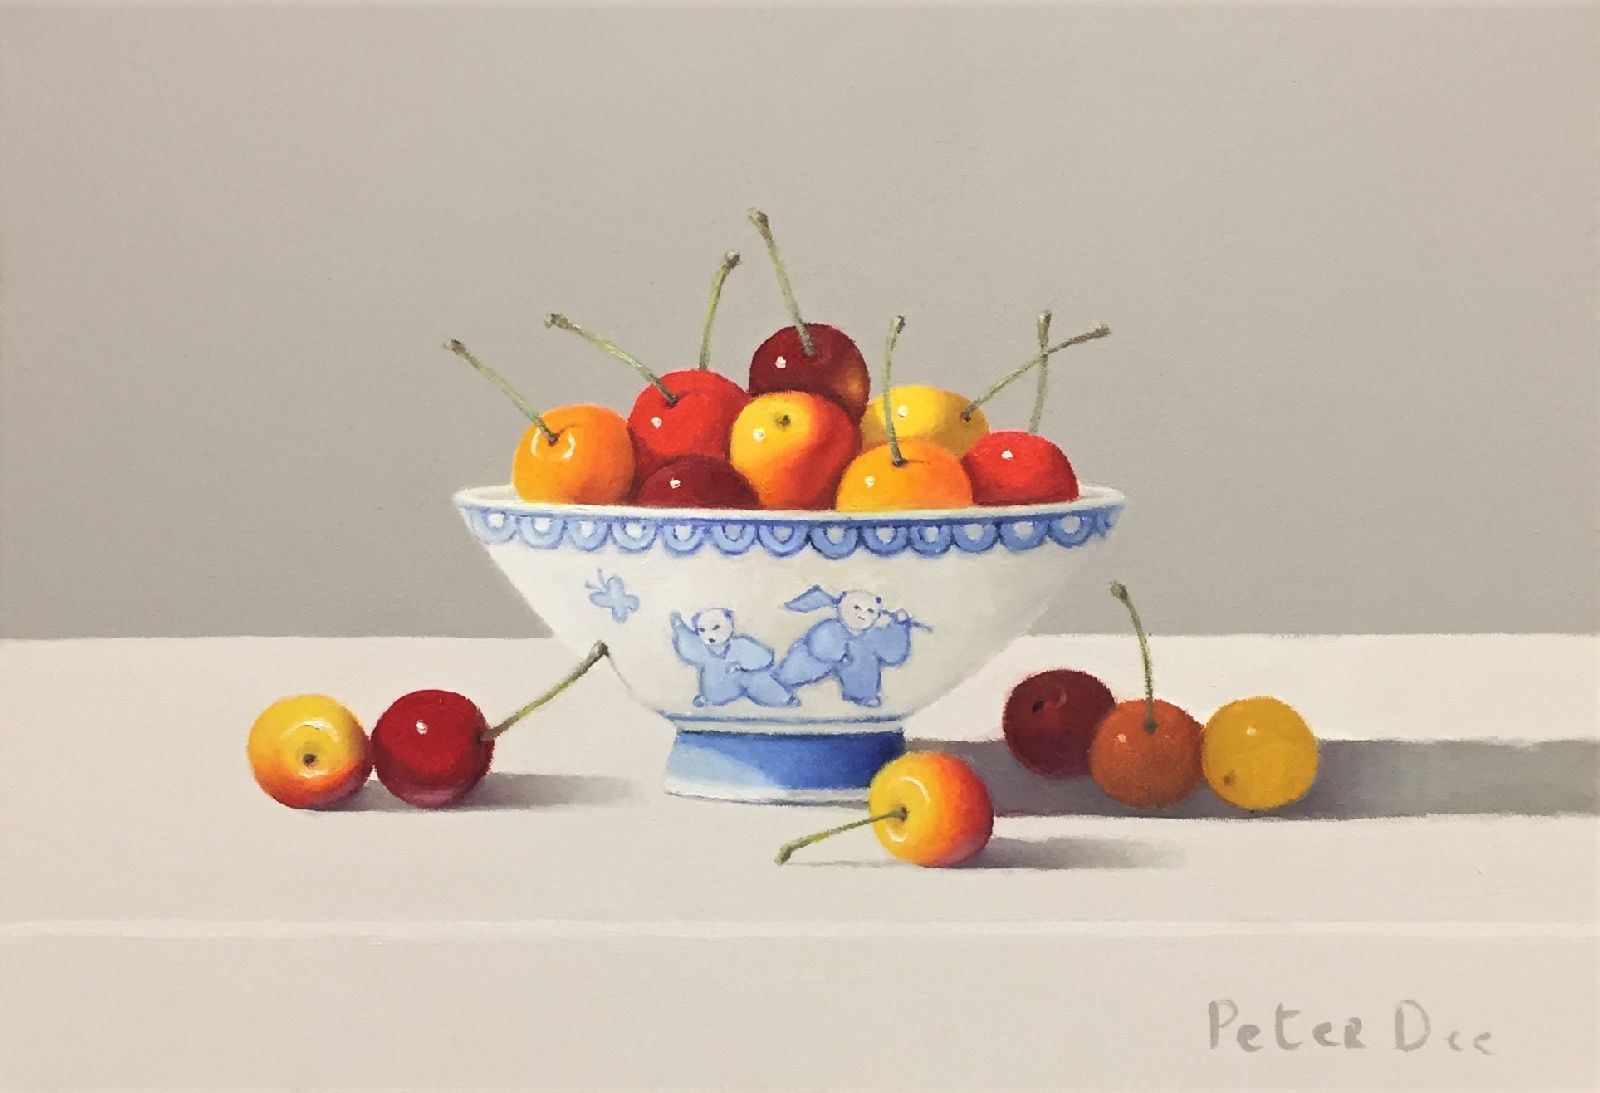 Oriental Vase with Cherries by Peter Dee